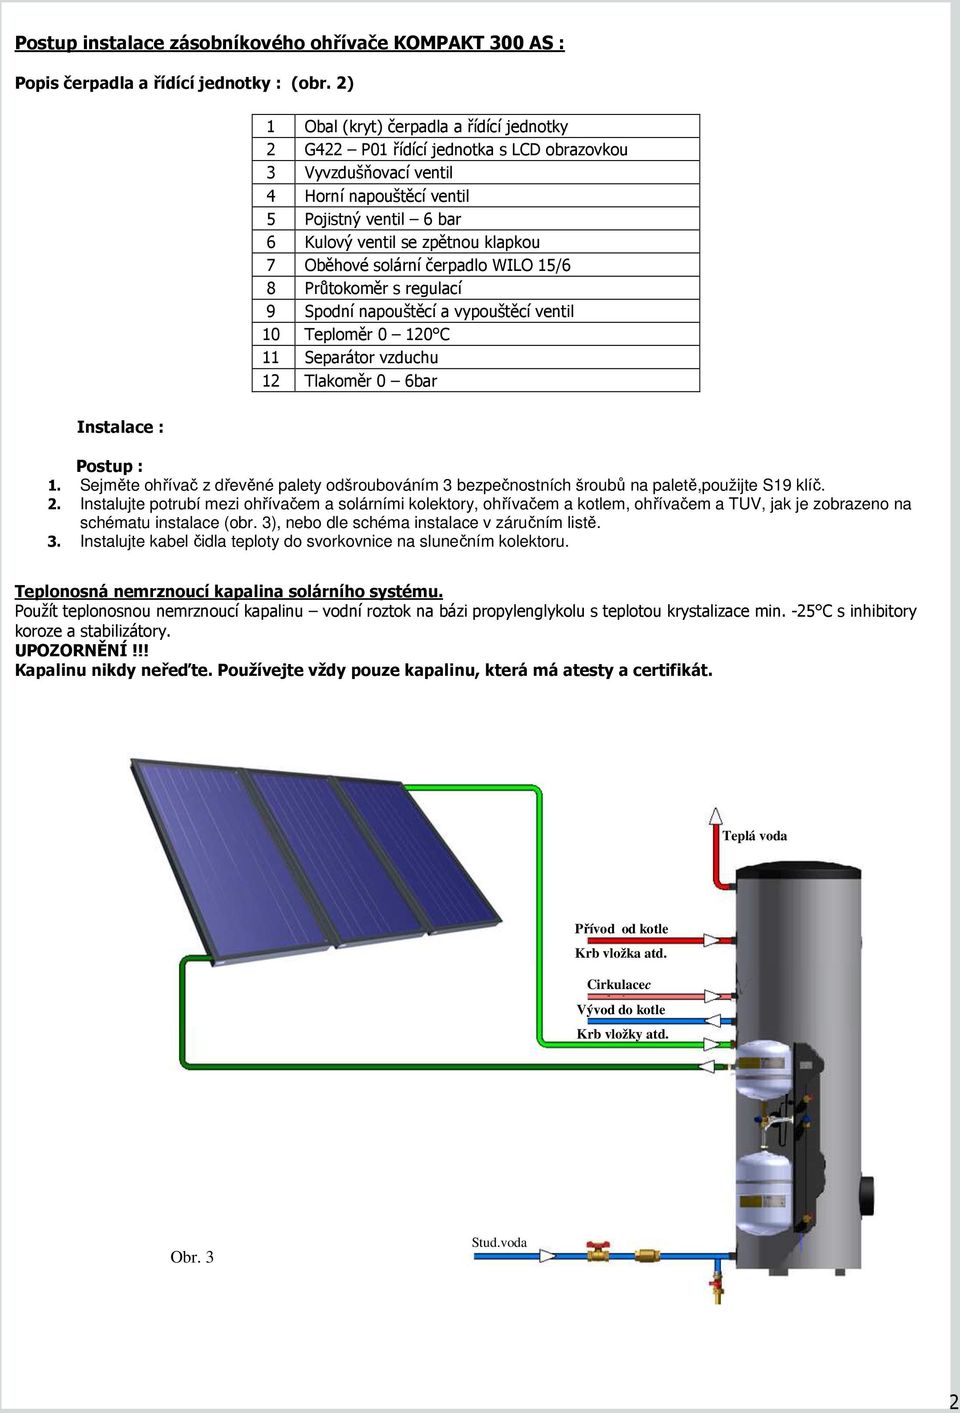 Oběhové solární čerpadlo WILO 15/6 8 Průtokoměr s regulací 9 Spodní napouštěcí a vypouštěcí ventil 10 Teploměr 0 120 C 11 Separátor vzduchu 12 Tlakoměr 0 6bar Instalace : 1.